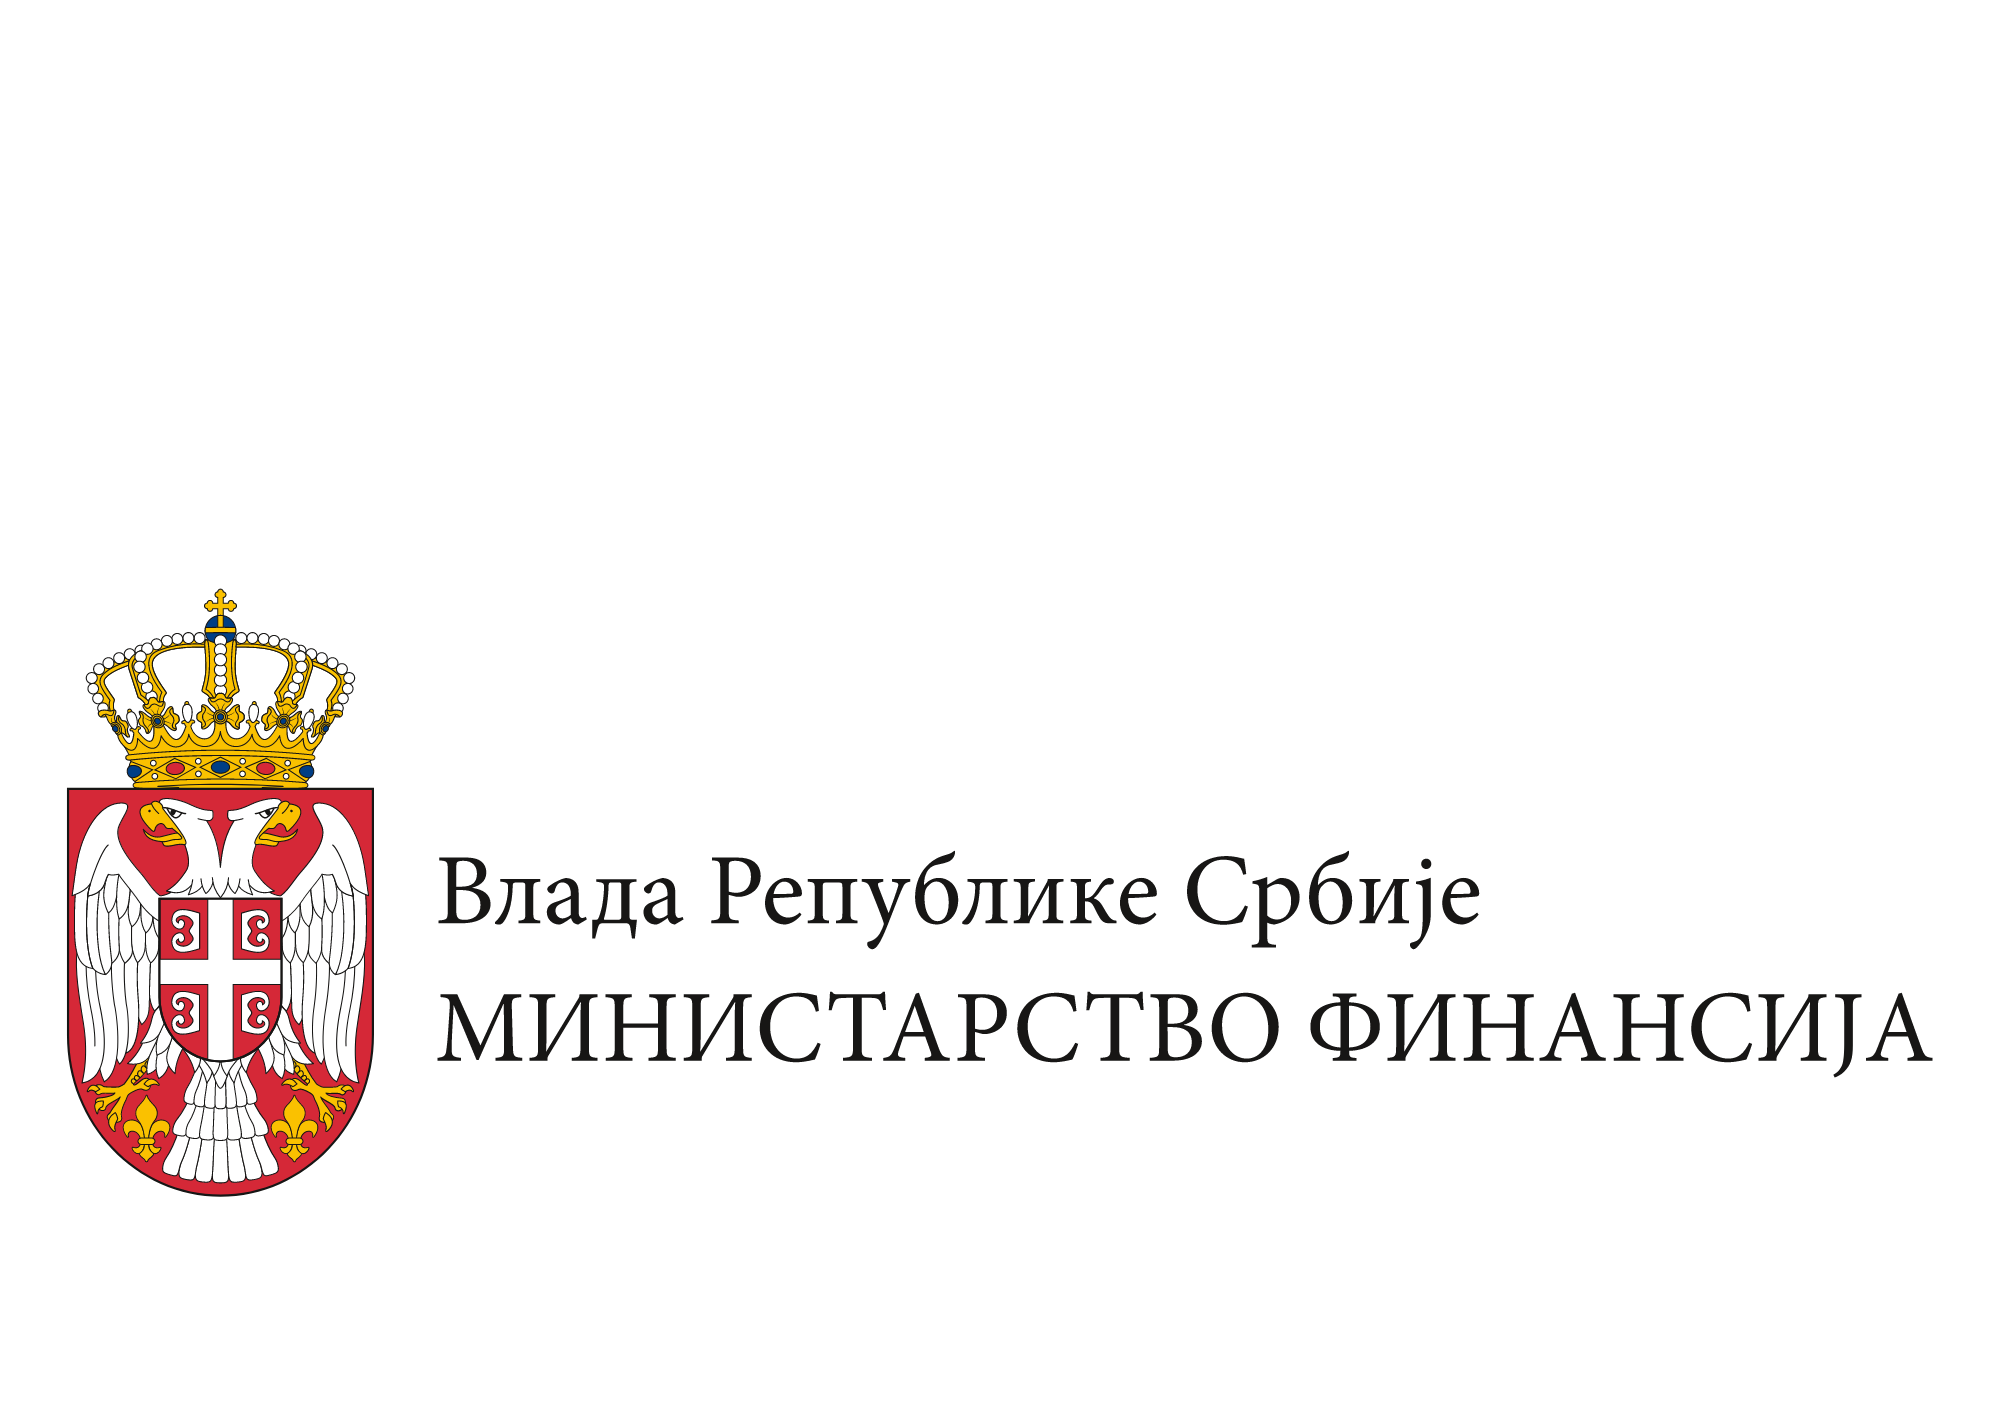 Министарство финансија Републике Србије